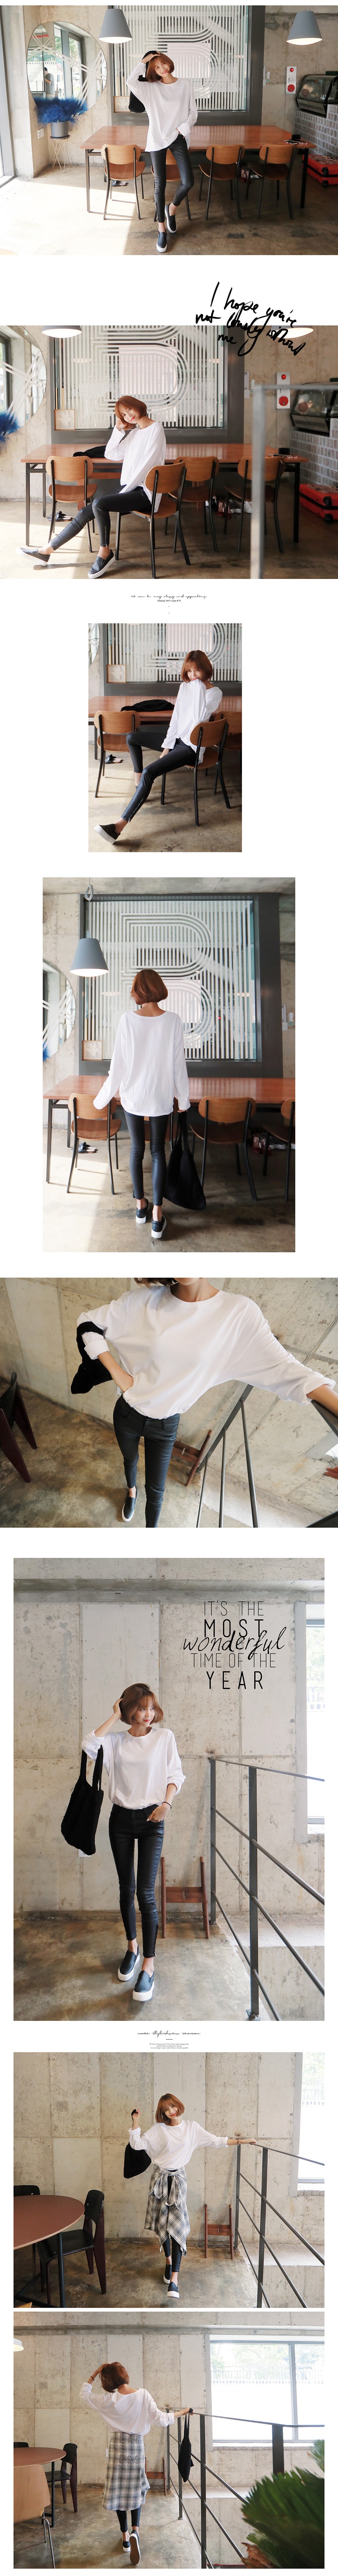 韩国MAGZERO [秋季新品] 侧拉链修身裤 Black S(55/25-26)